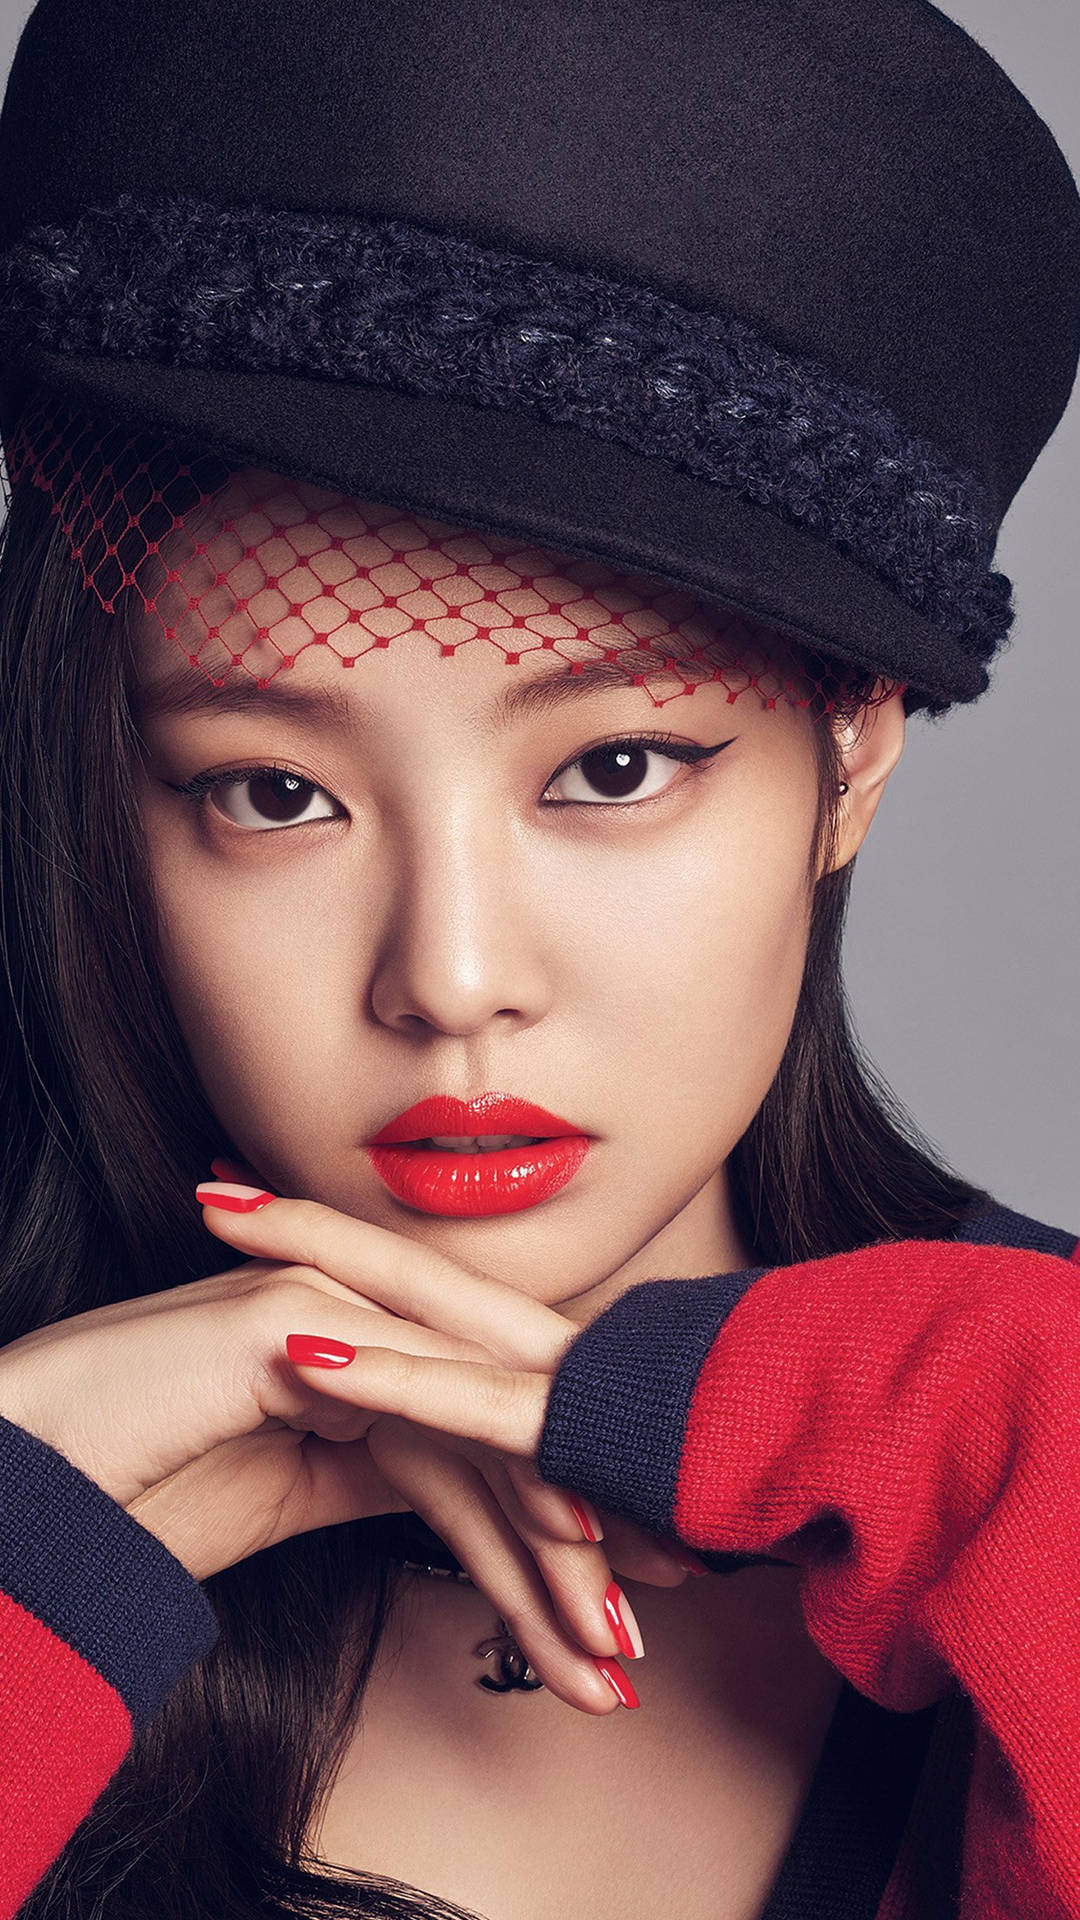 Blackpink Jennie Wearing Red Lipstick Background